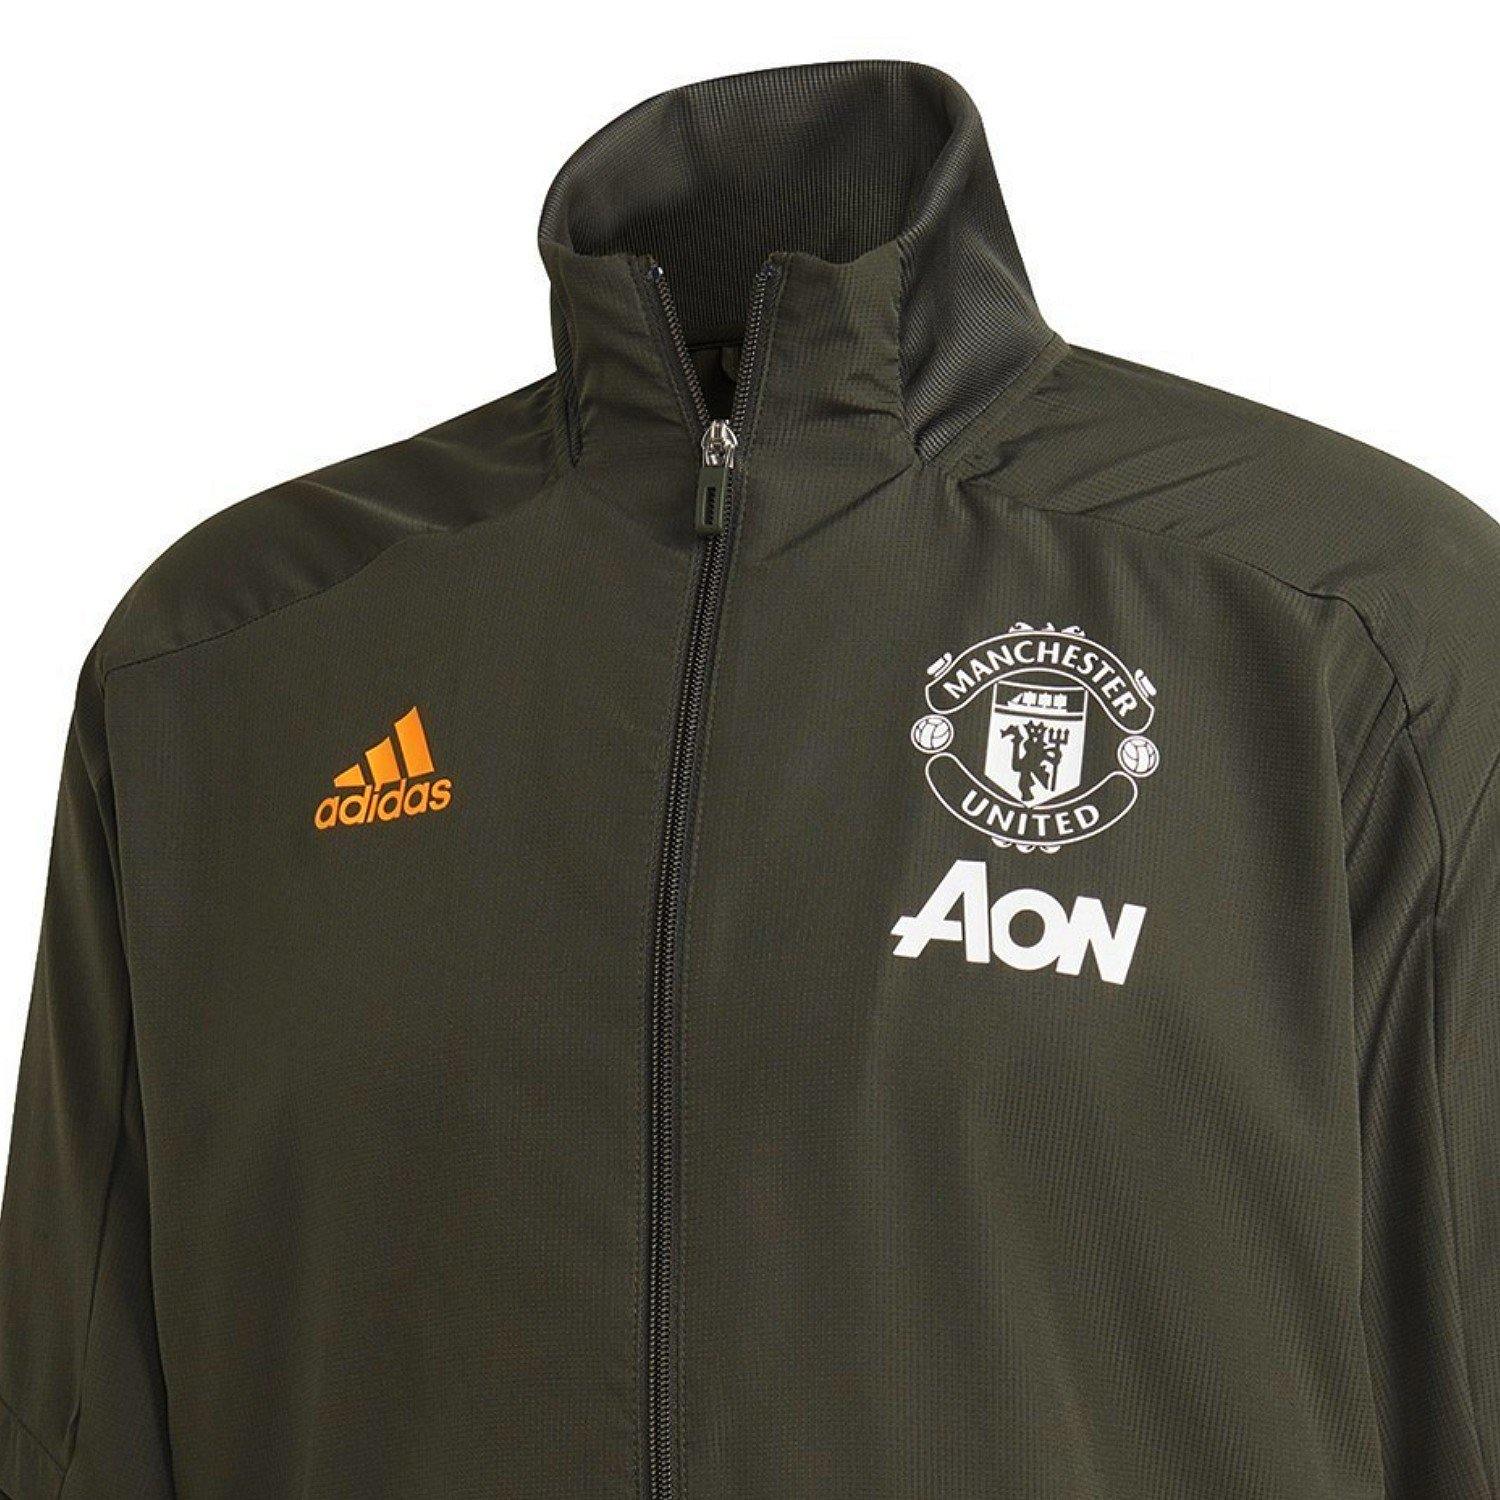 kas affix strijd Manchester United green presentation Soccer jacket 2020/21 - Adidas –  SoccerTracksuits.com